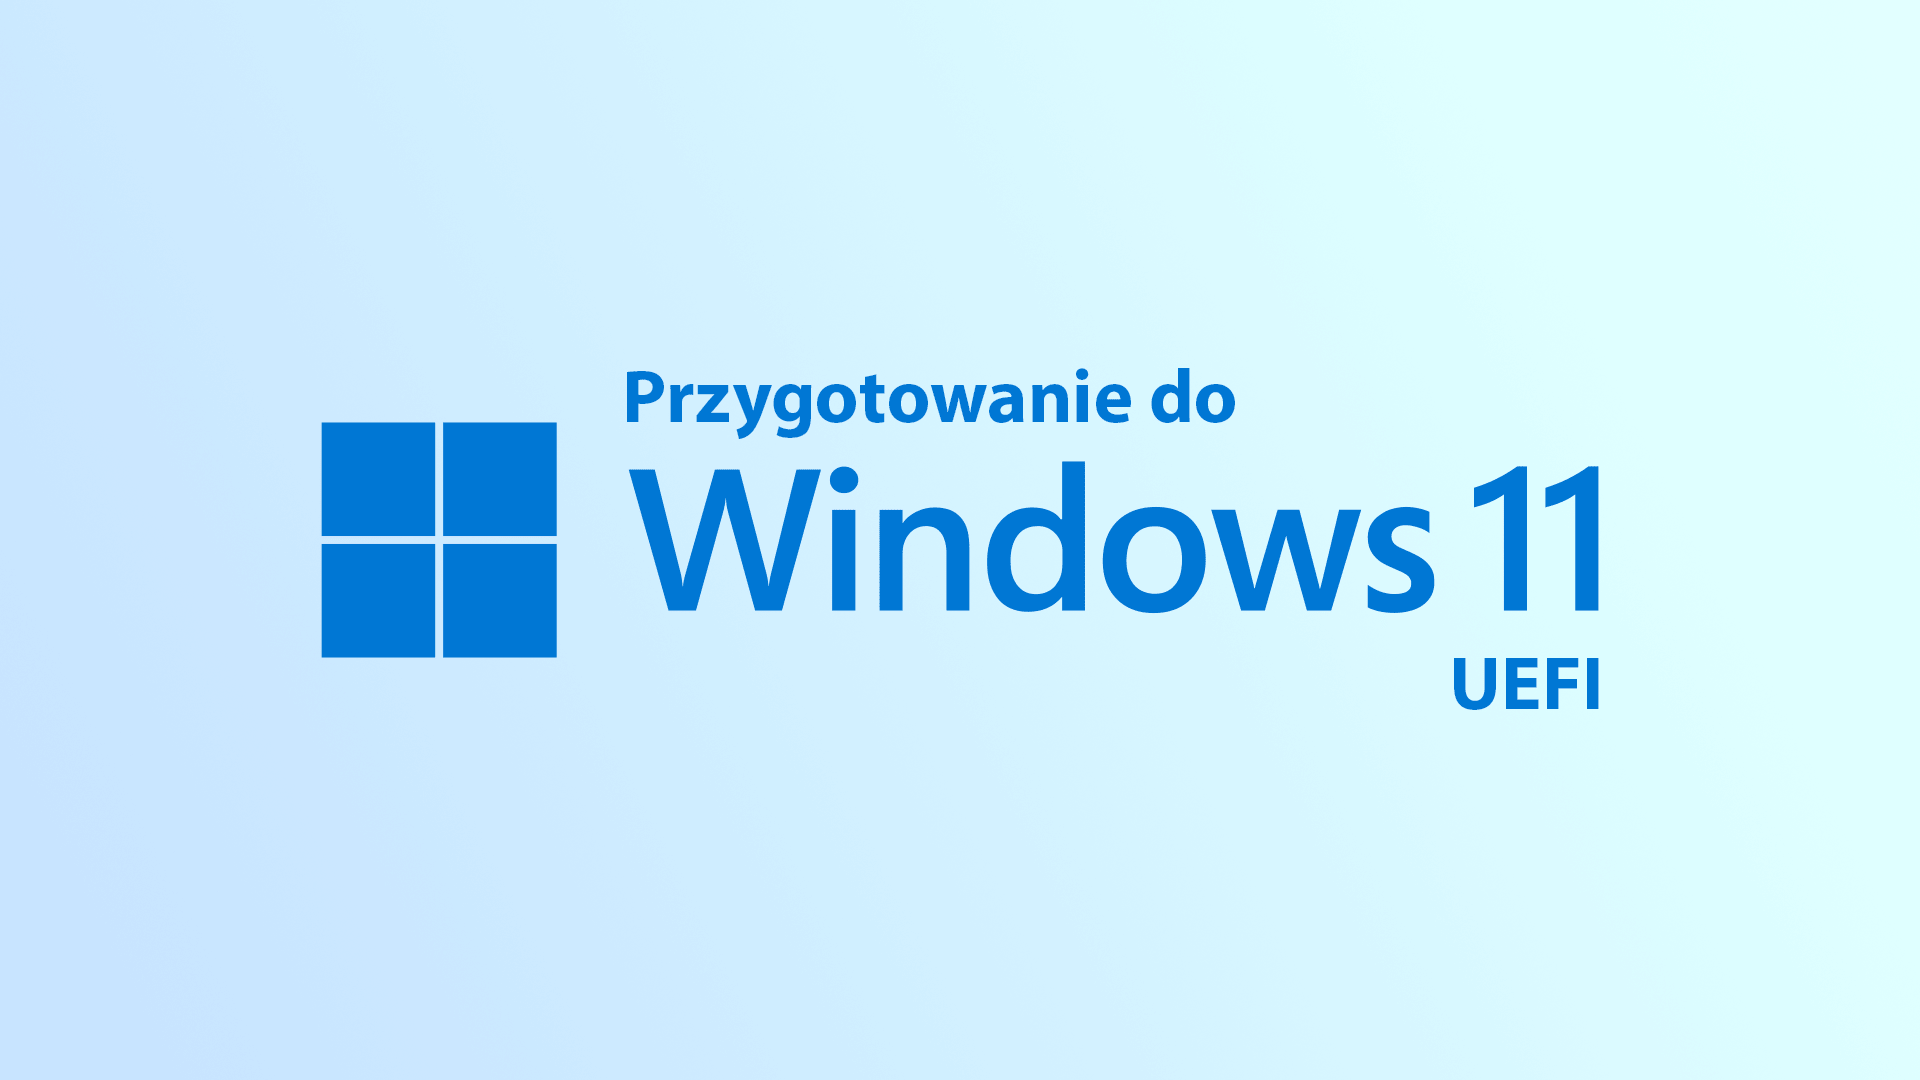 Przygotowanie do Windows 11 - UEFI